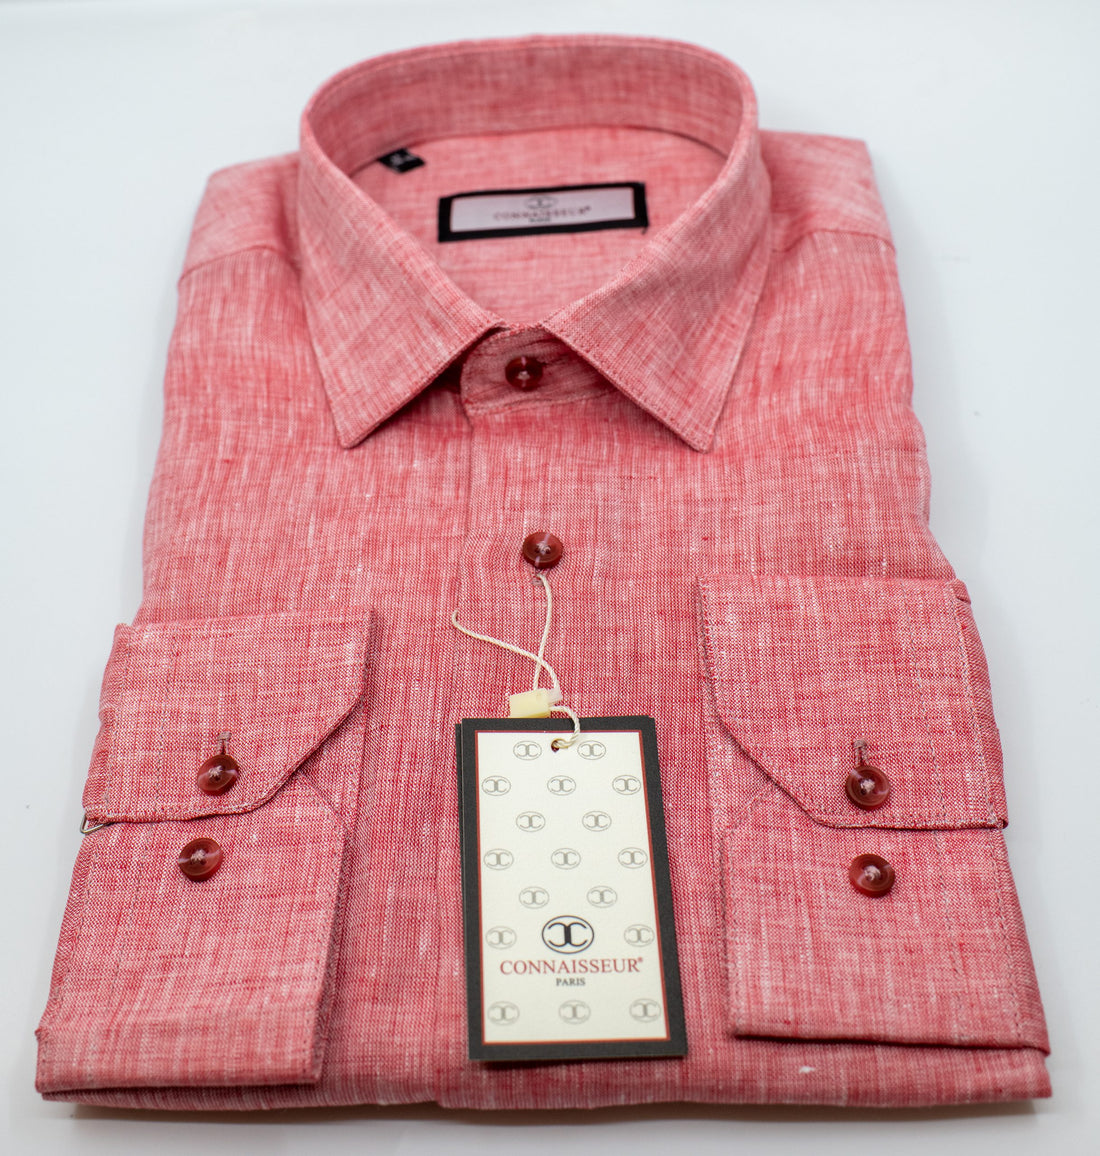 Connaisseur - Red linen slim fit dress shirt